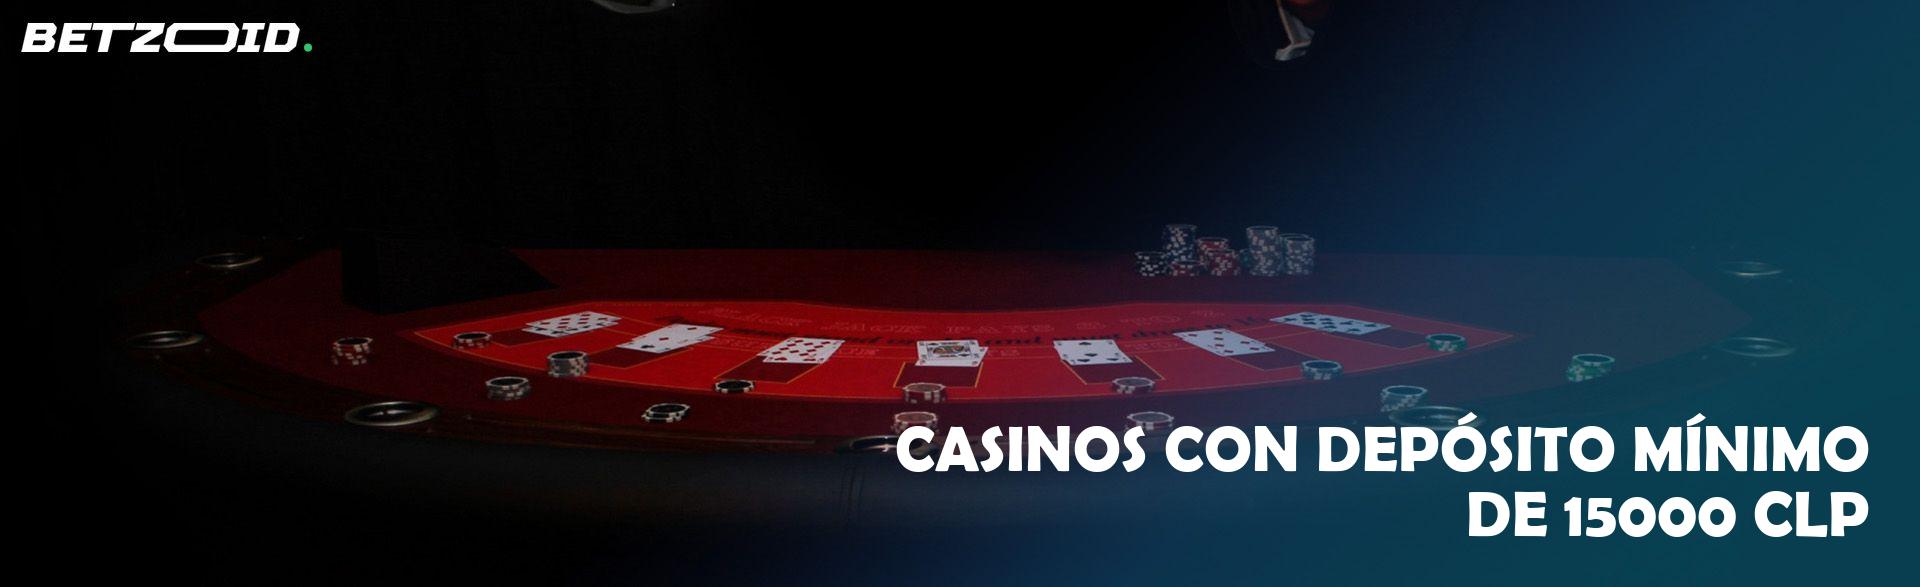 Casinos con Depósito Mínimo de 15000 CLP.